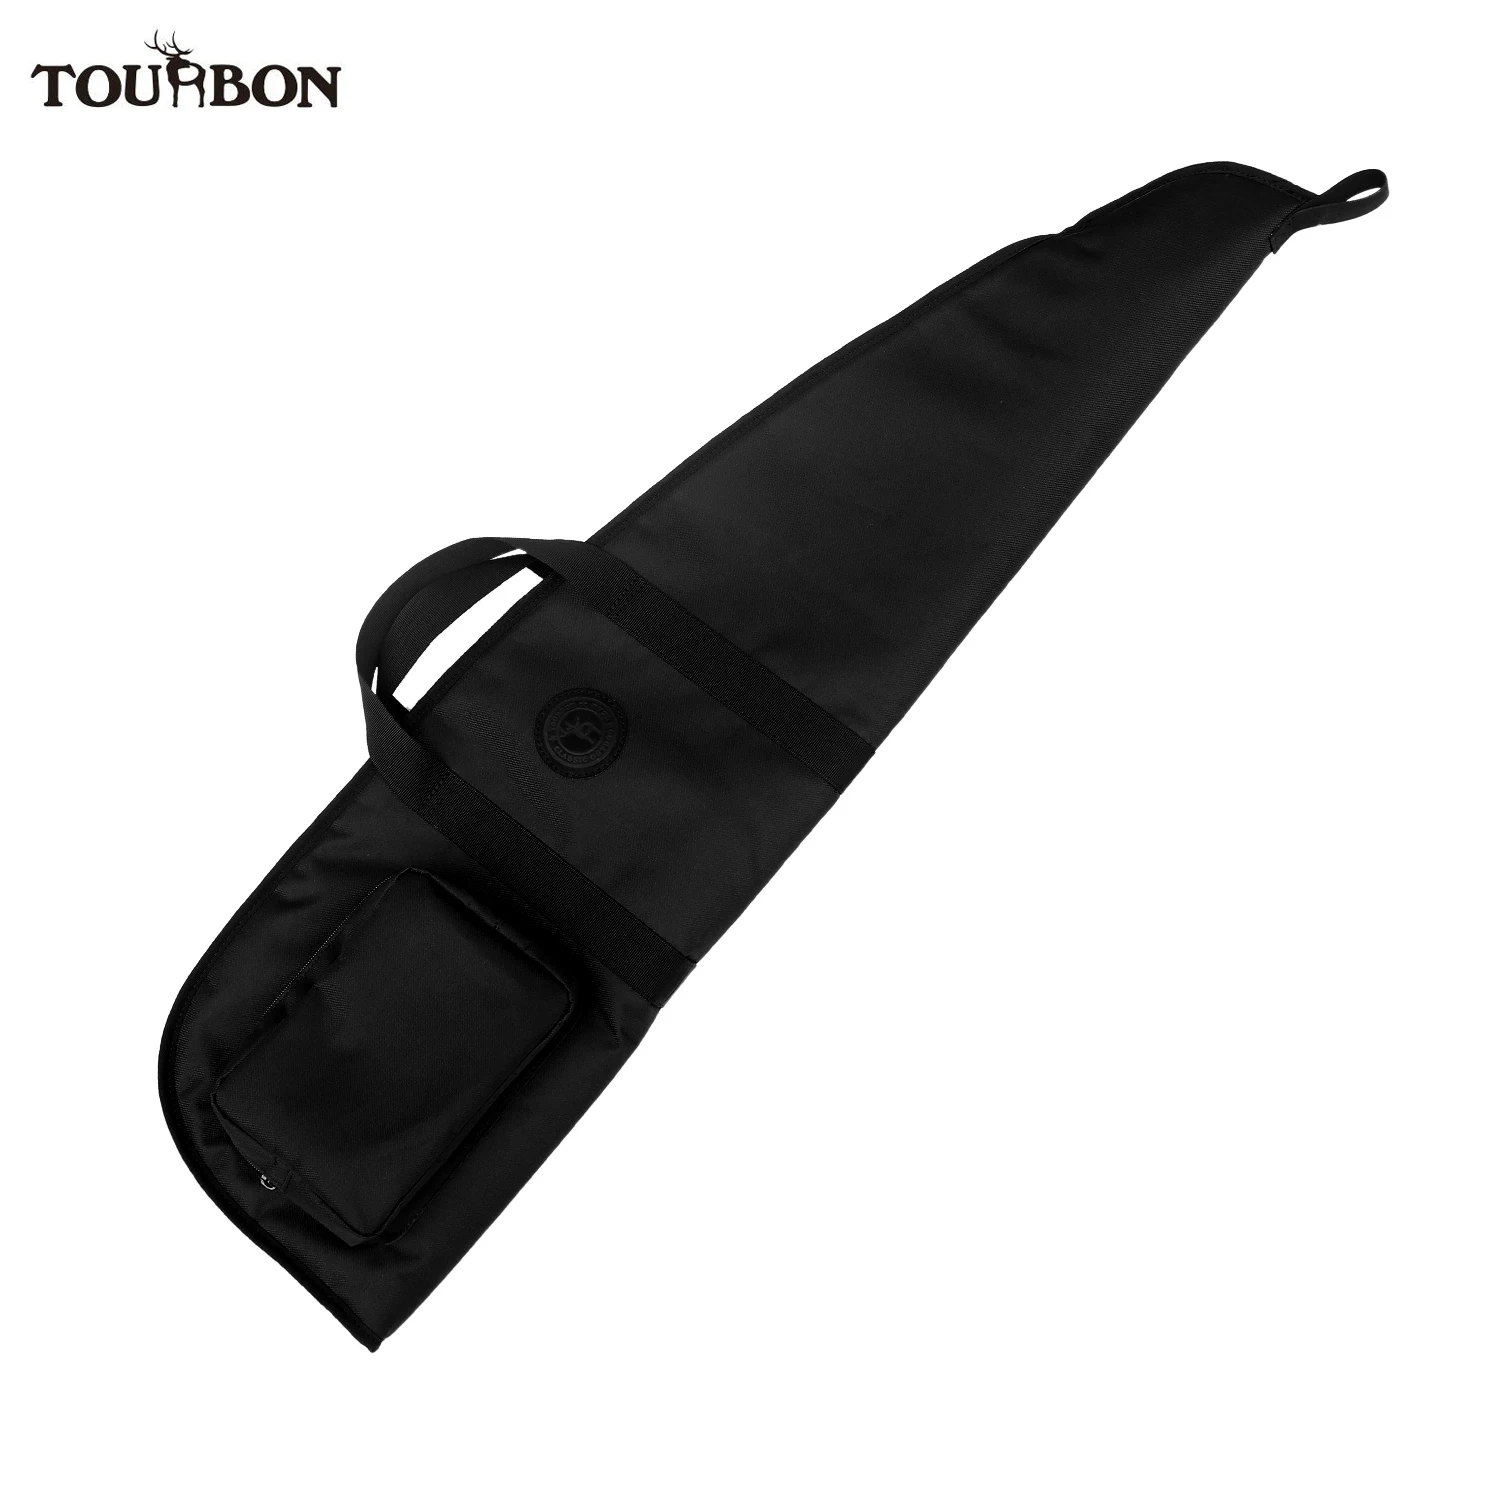 

Чехол Tourbon для ружья, Обложка 100 см для ружья, мягкая сумка для переноски с карманом на молнии и регулируемым плечевым ремнем